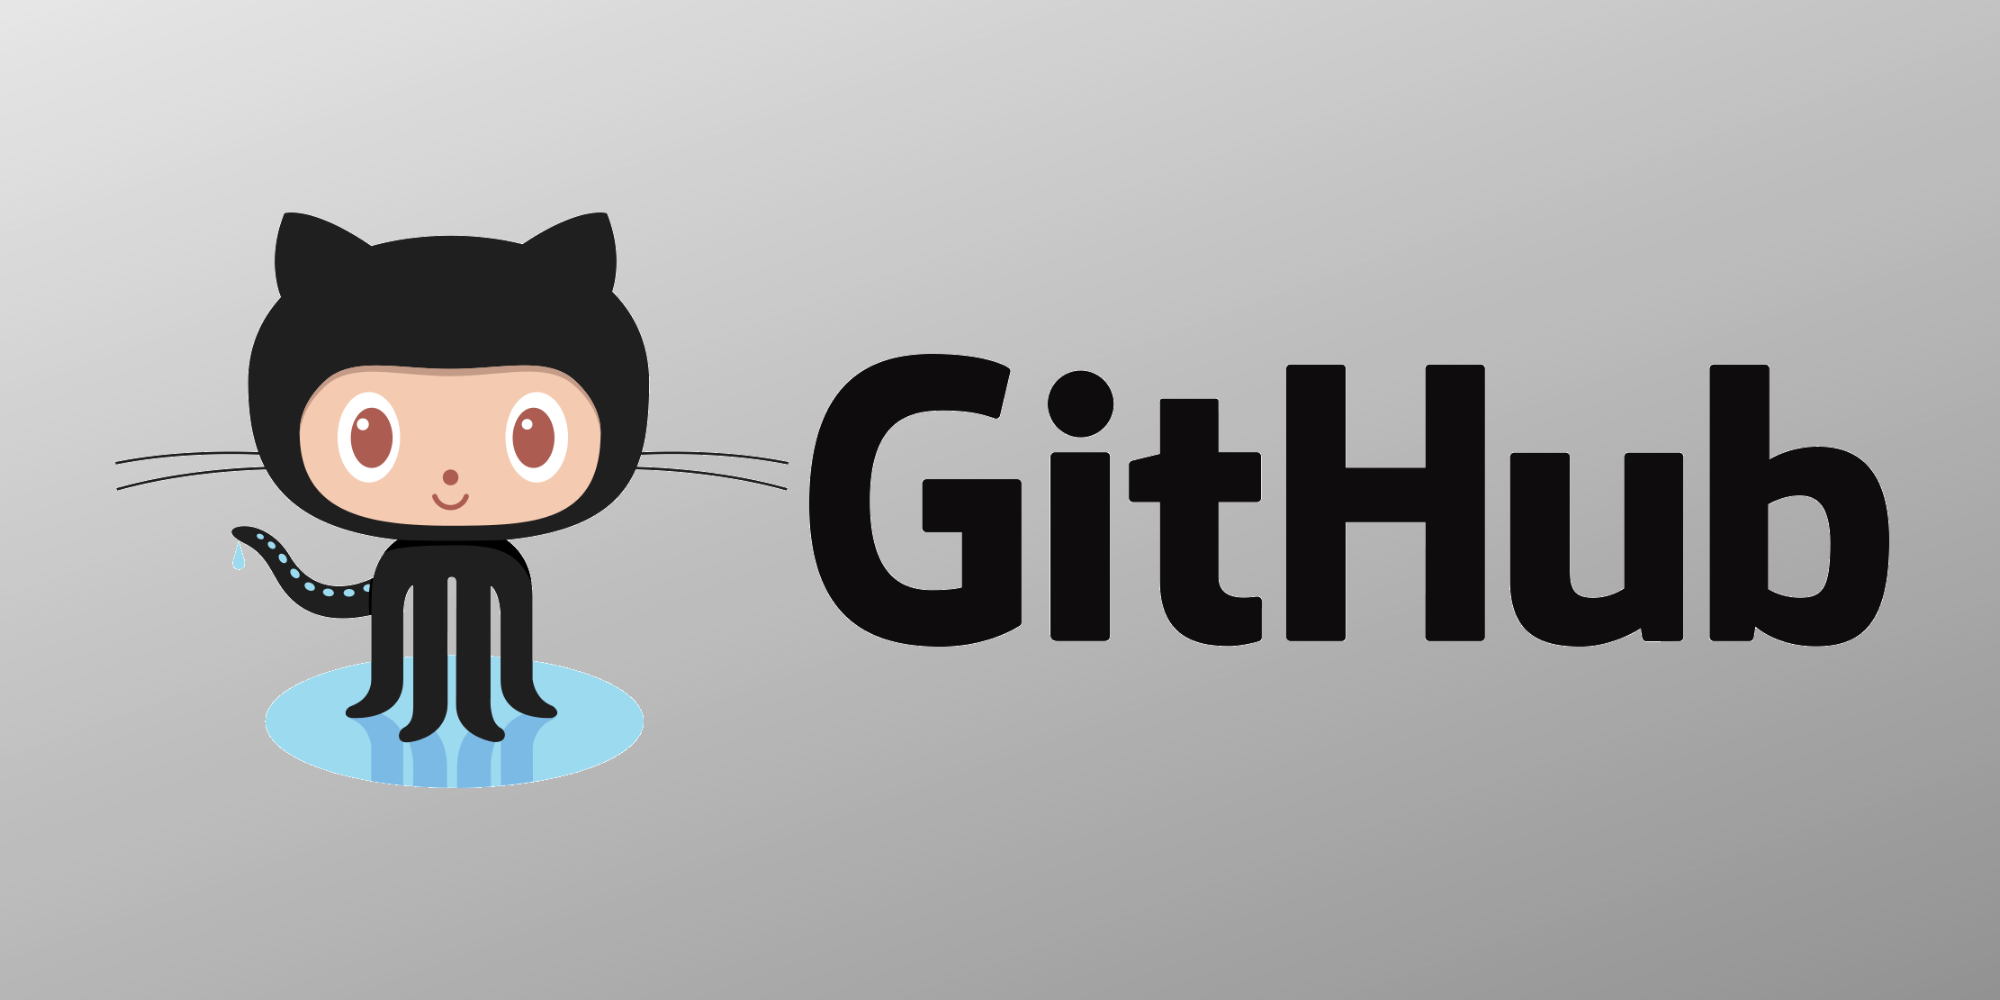 Cs github. Гитхаб. Логотип GITHUB. Логотип гитхаб. GITHUB картинка.